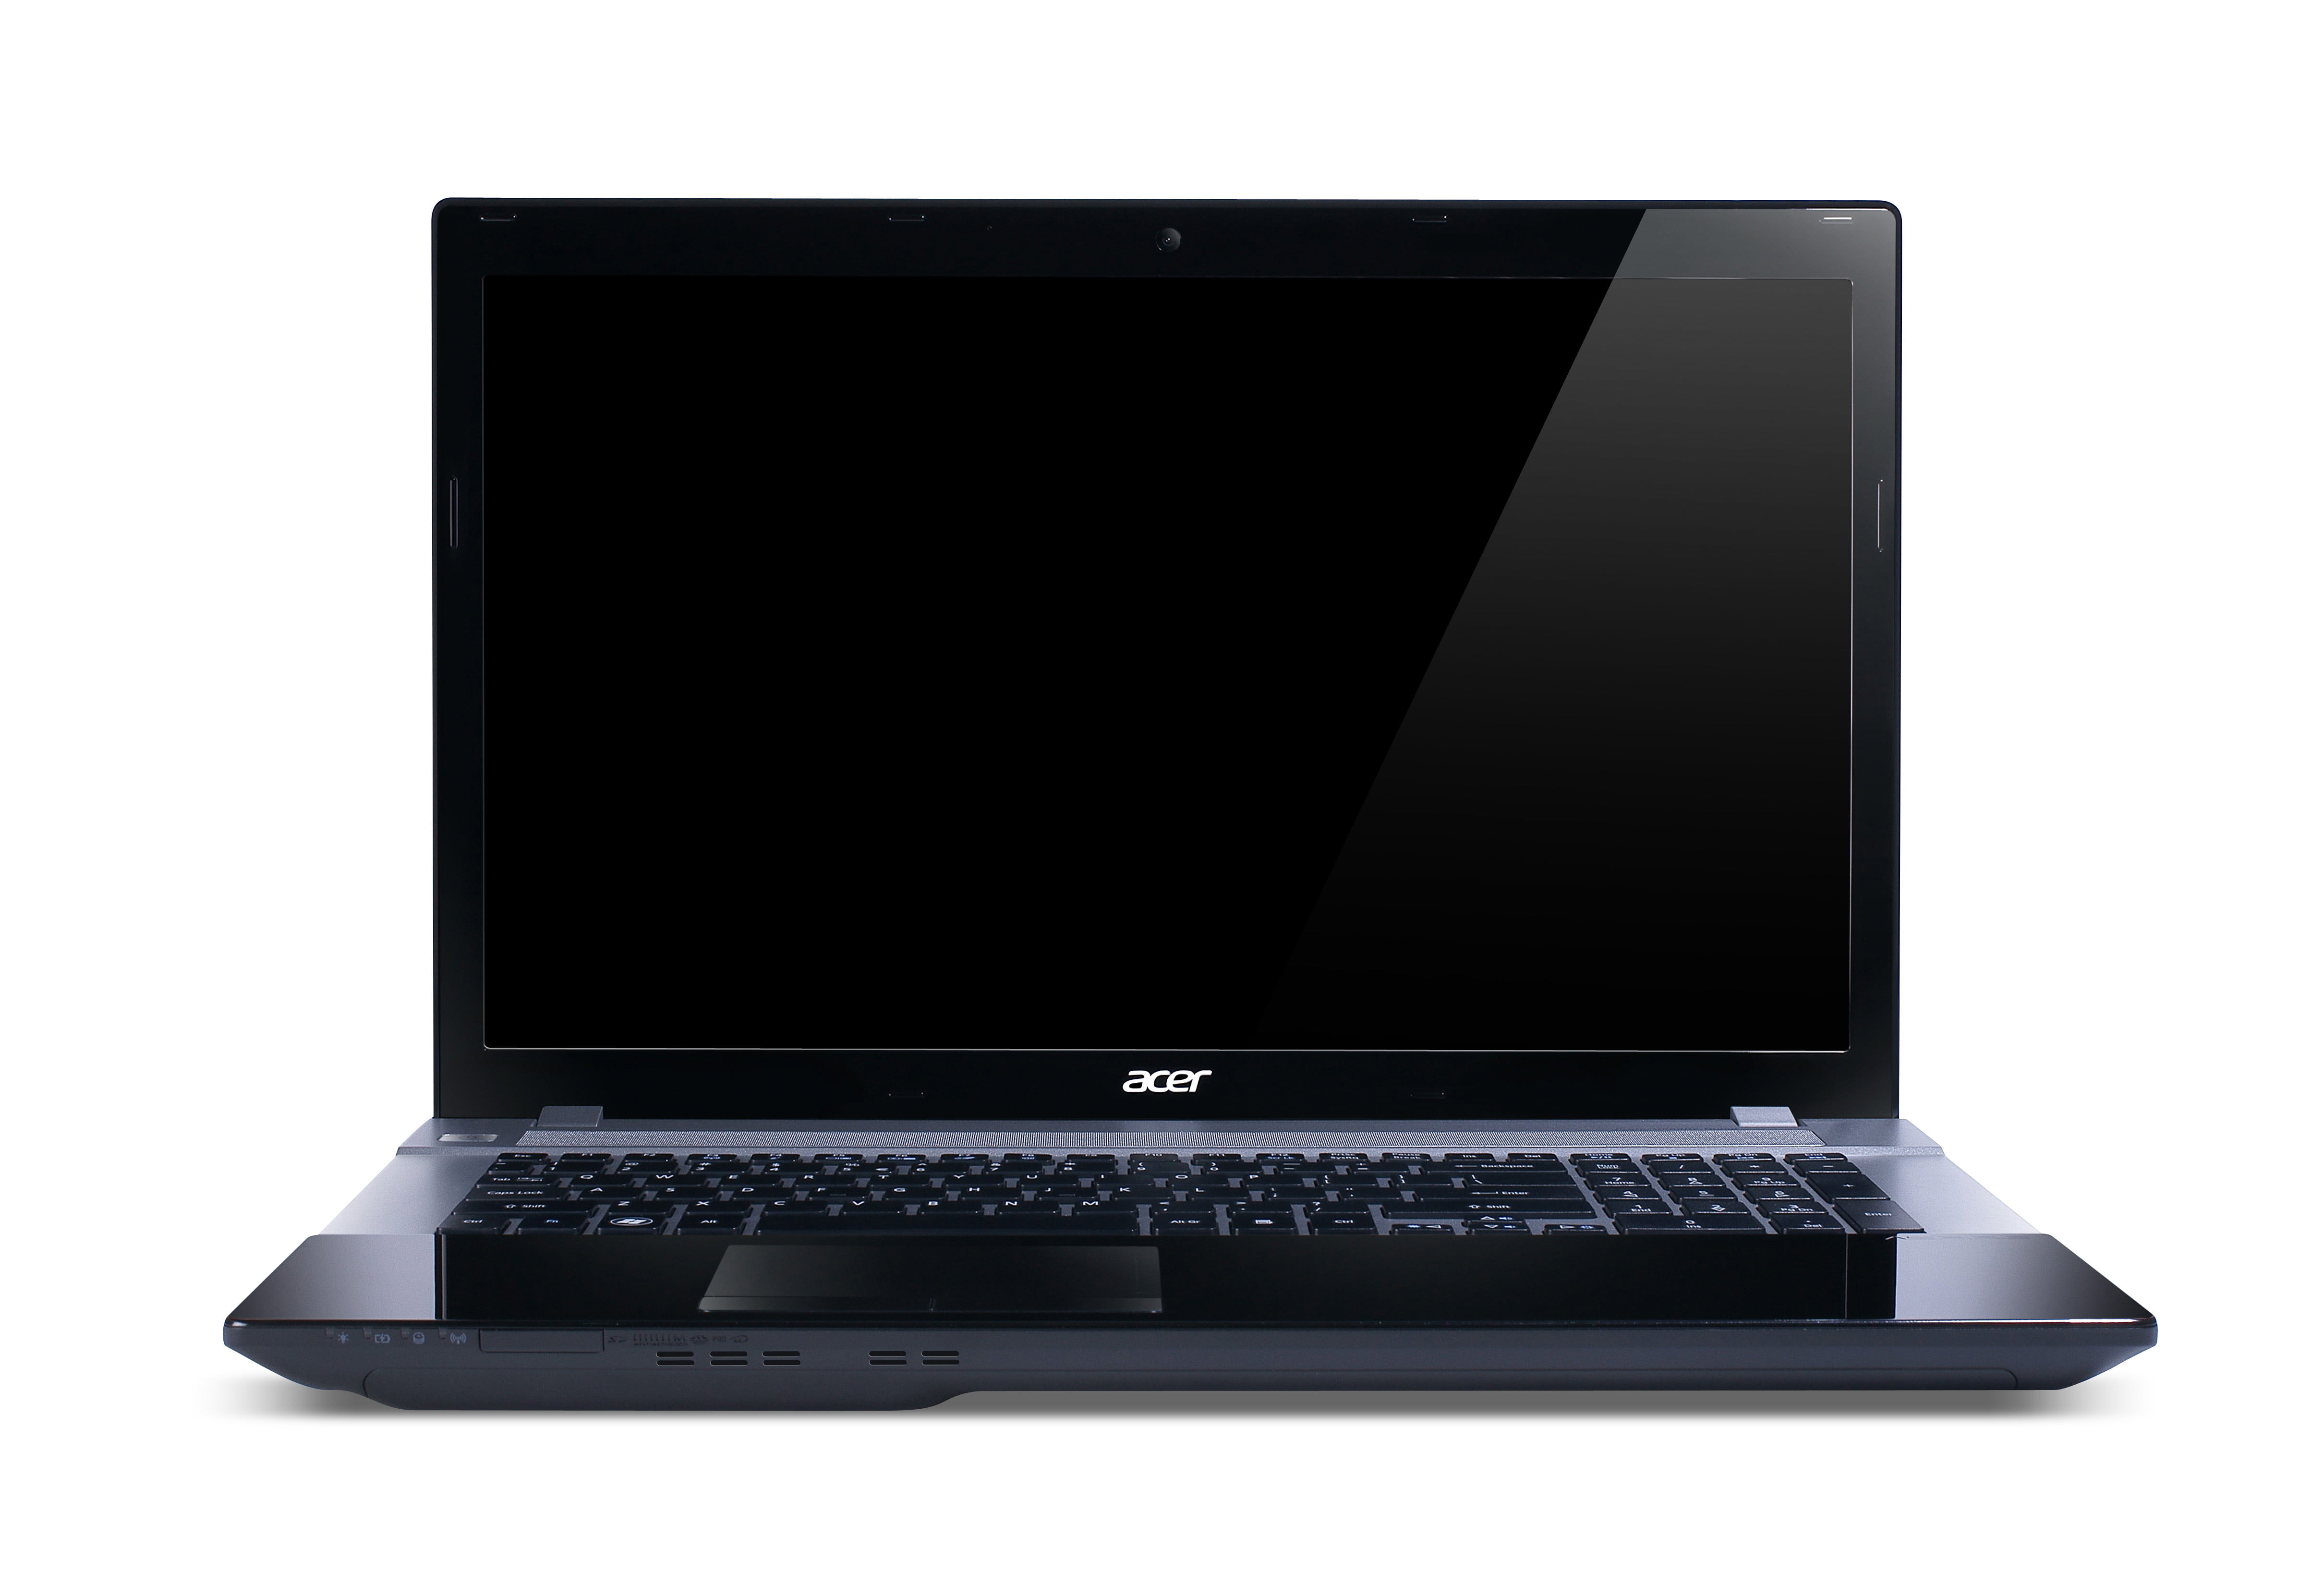 cement Eerlijkheid Ongelofelijk Acer Aspire 17.3" Laptop, Intel Core i5 i5-2450M, 6GB RAM, 500GB HD, DVD  Writer, Windows 7 Home Premium, V3-771G-52456G50Makk - Walmart.com